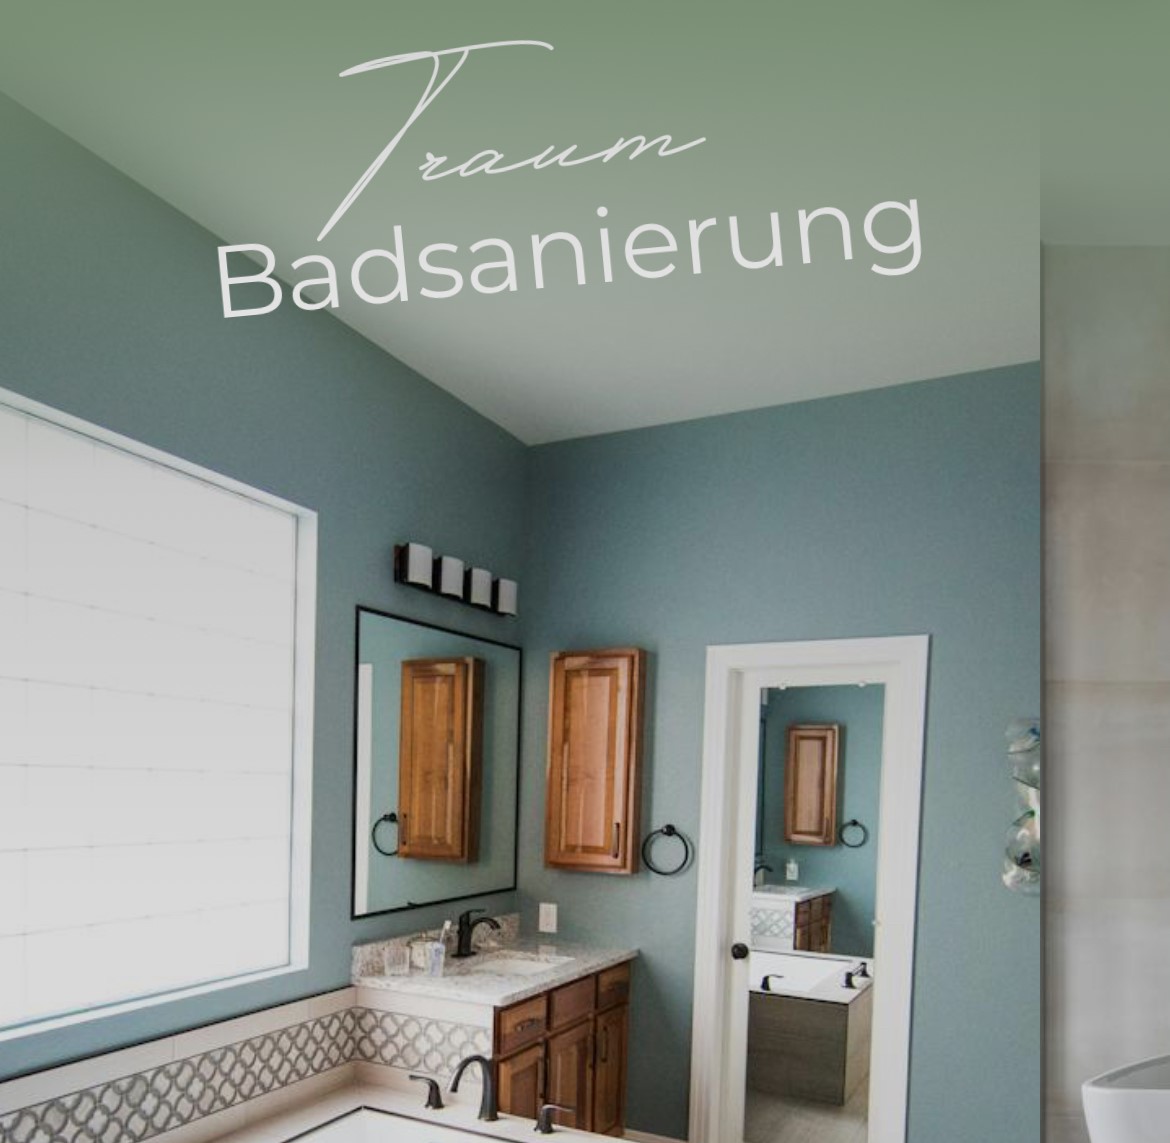 Featured image for “Traum Badsanierung”